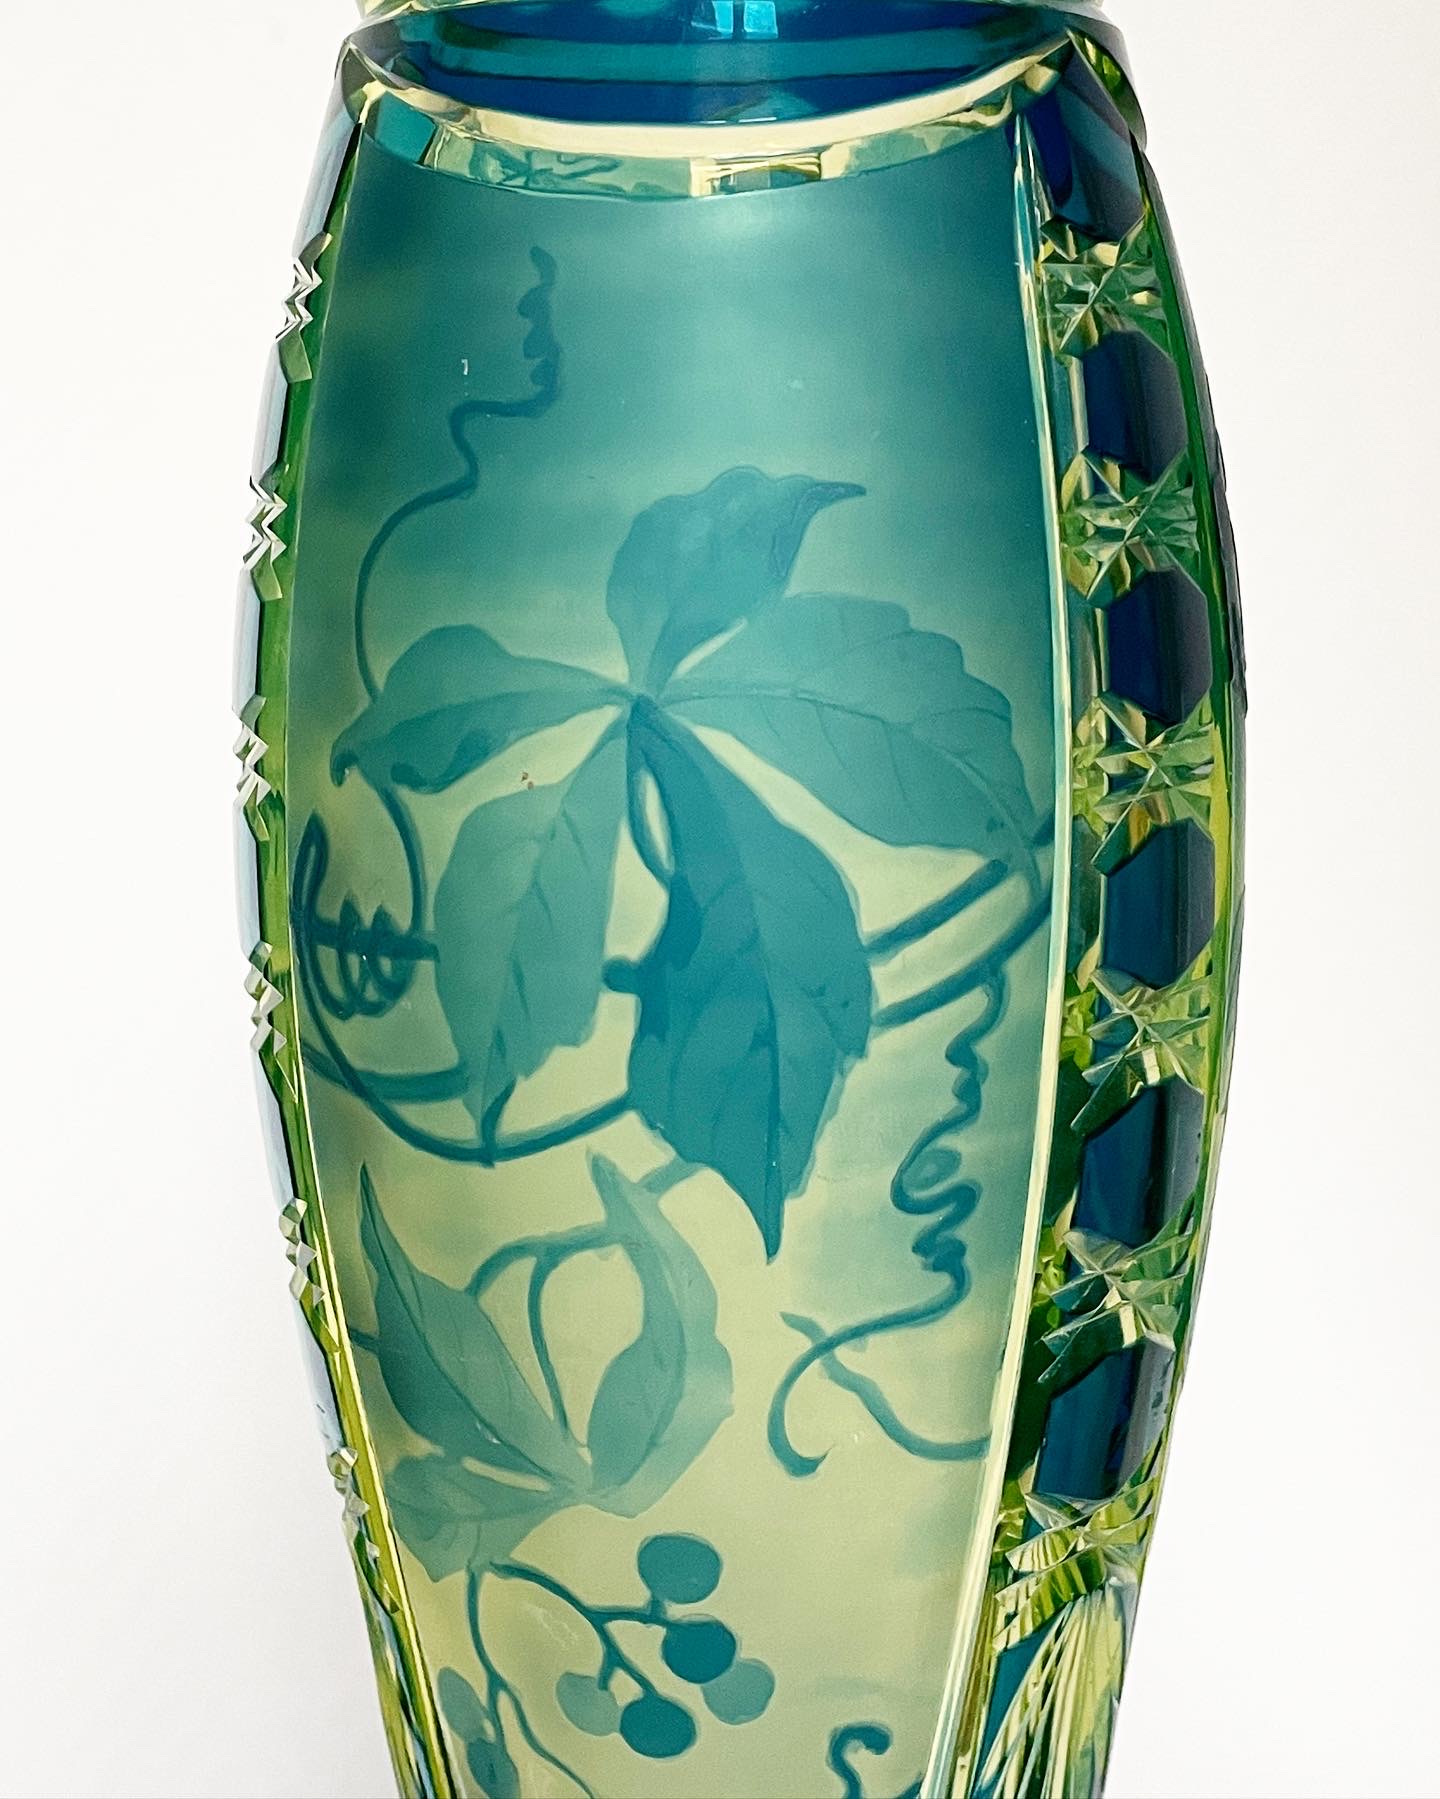 vase-jonghen-val-saint-lambert-urane-bleu-pétrole-art-nouveau-collection-cristal-léon-ledru-dégagé-acide-aurore-morisse-antiquaire-marchand-art-liège-paris3